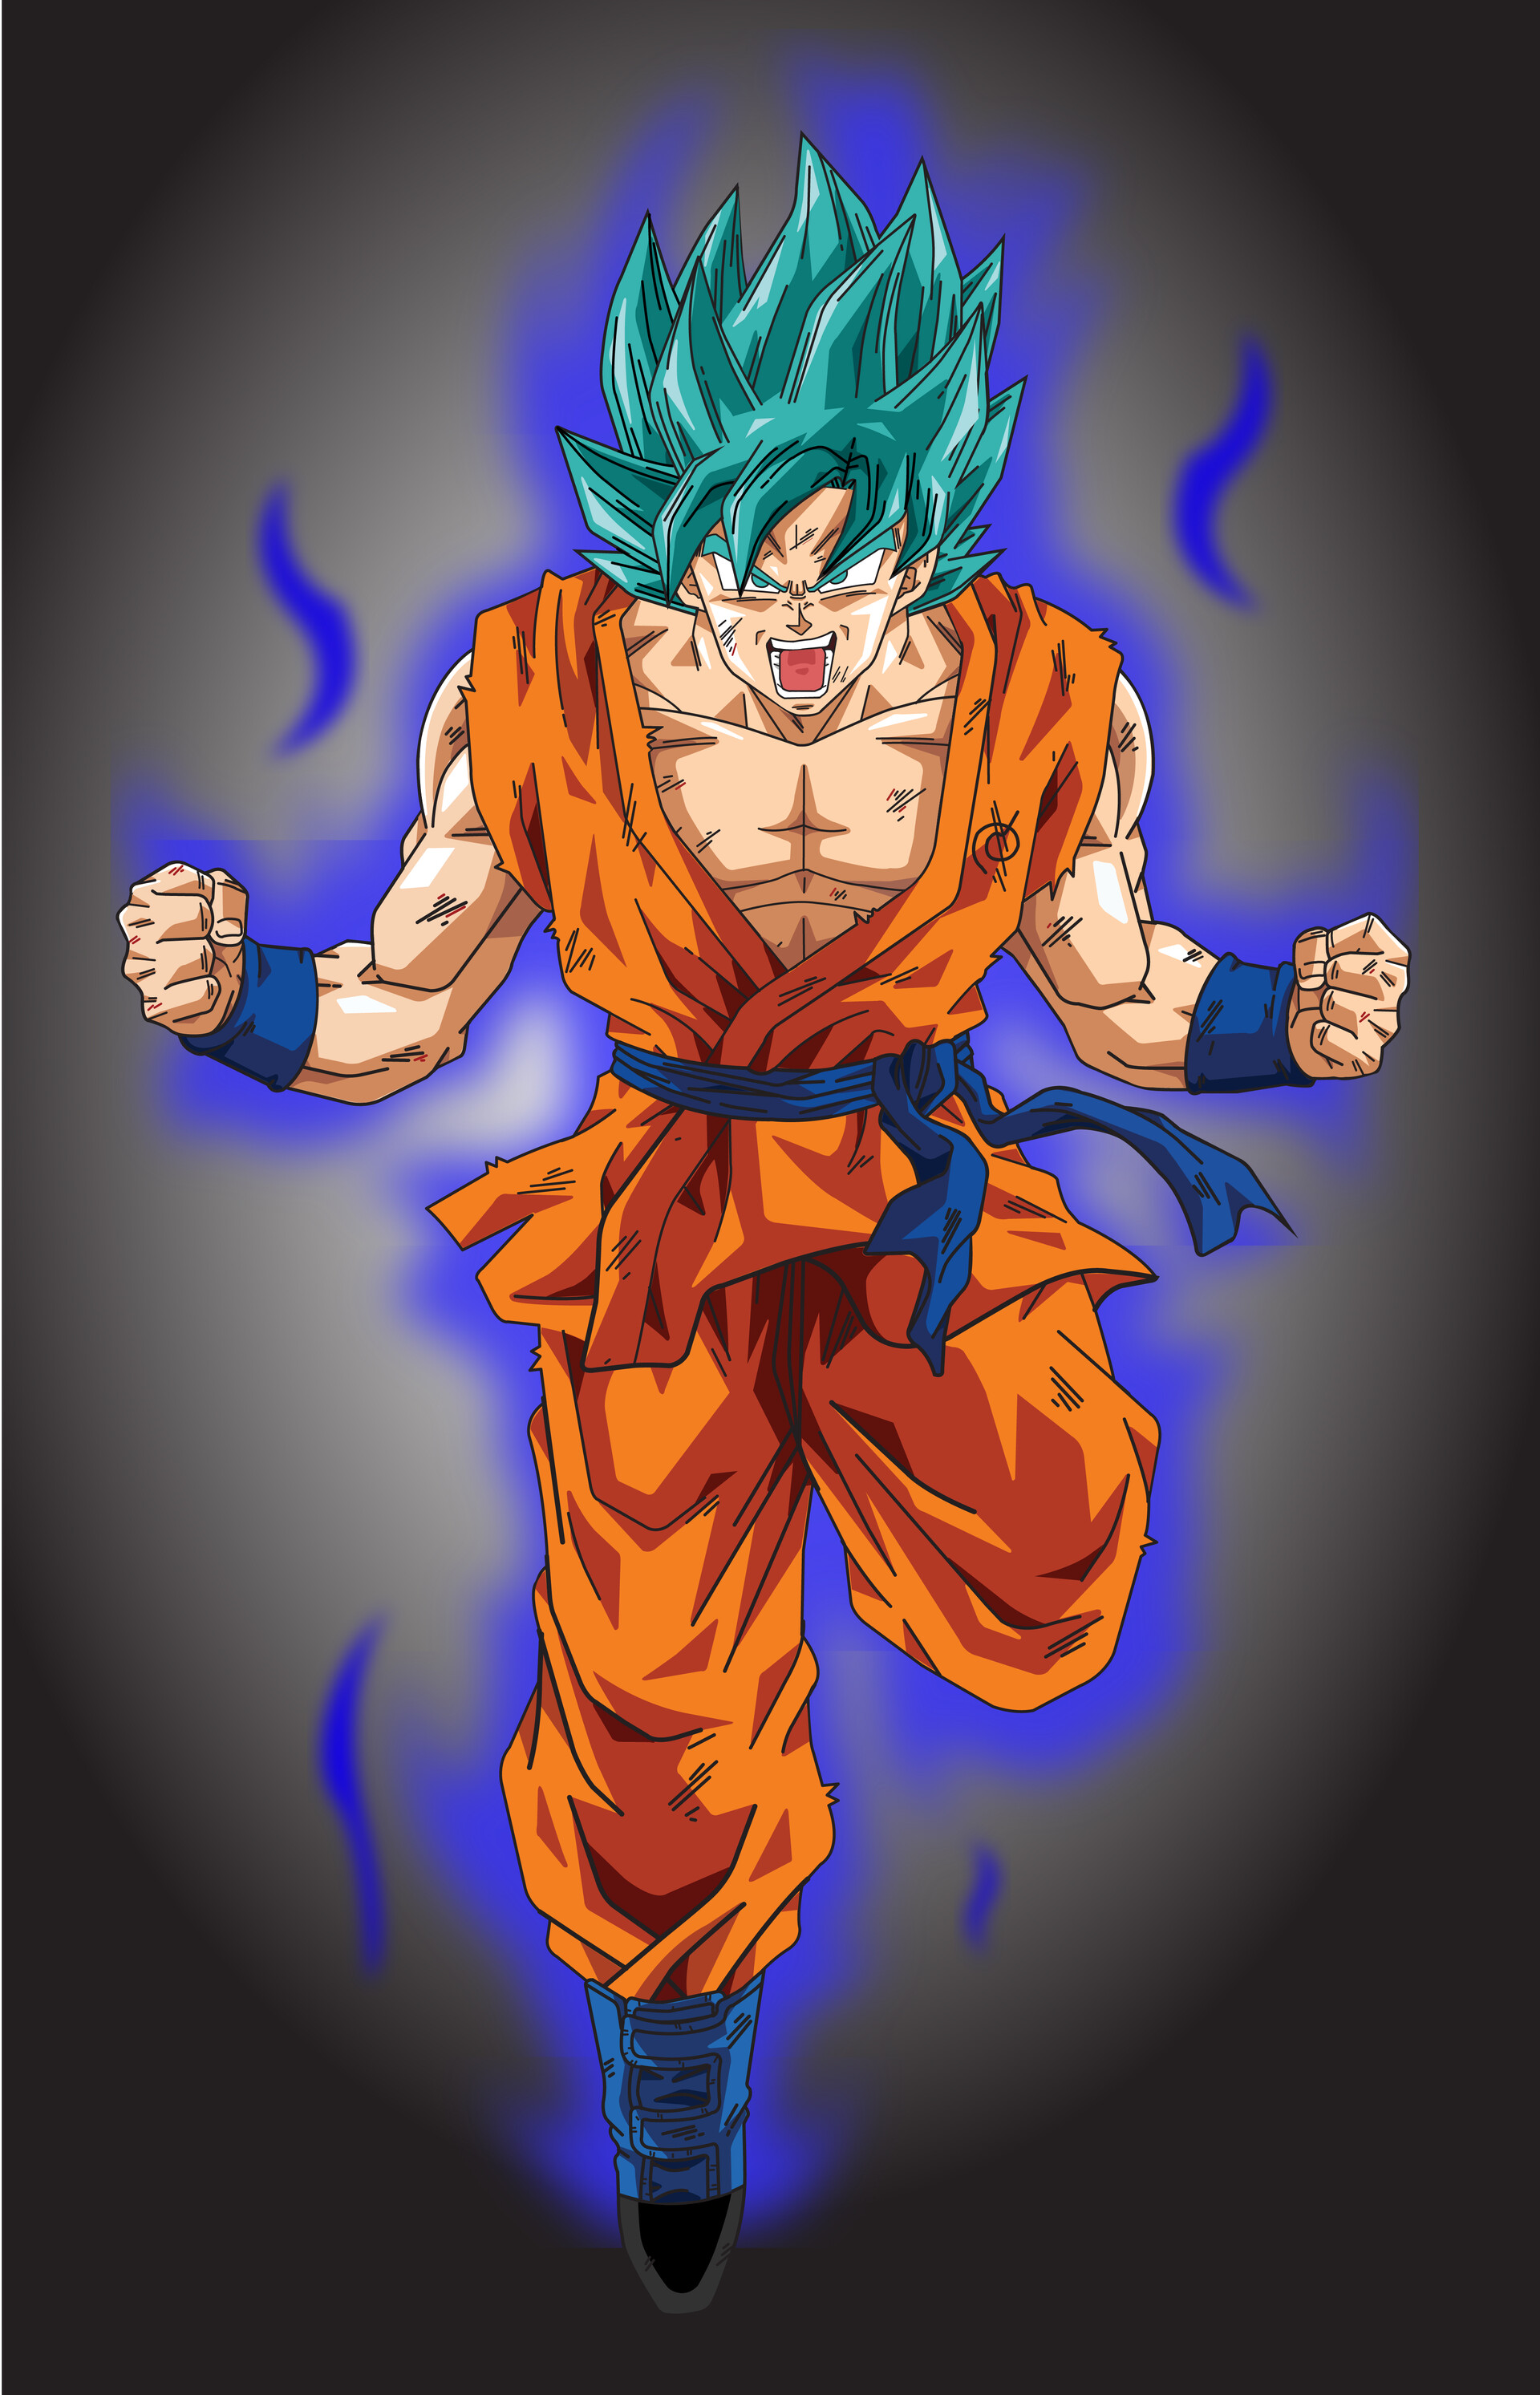 omkar bilwankar - Goku Super Saiyan Blue